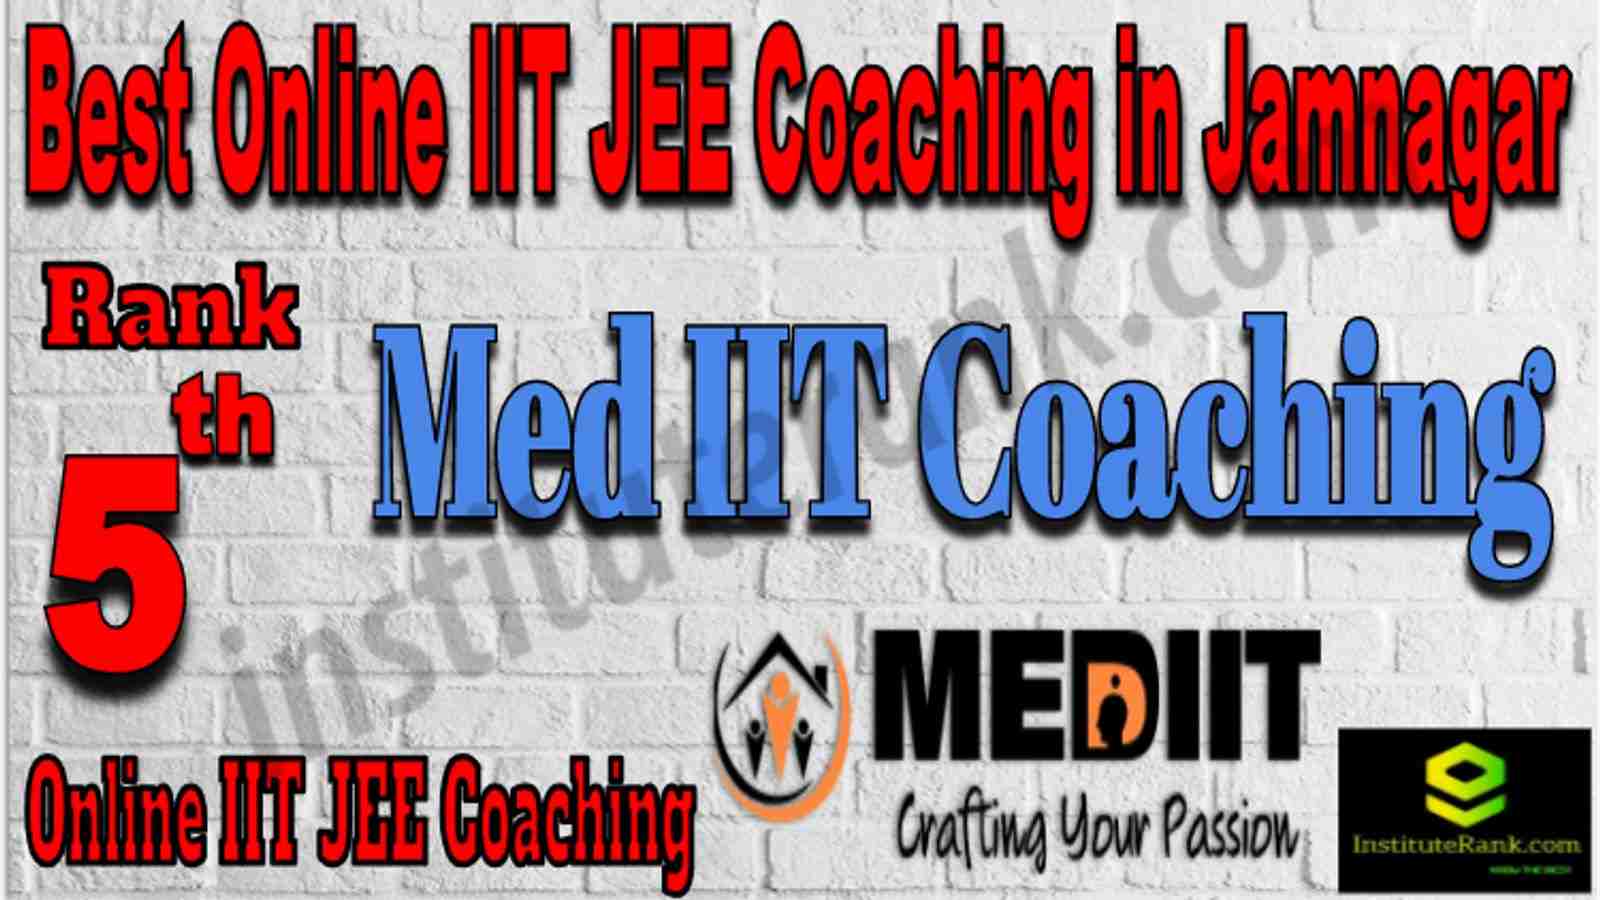 Rank 5 Best Online IIT JEE Coaching in Jamnagar